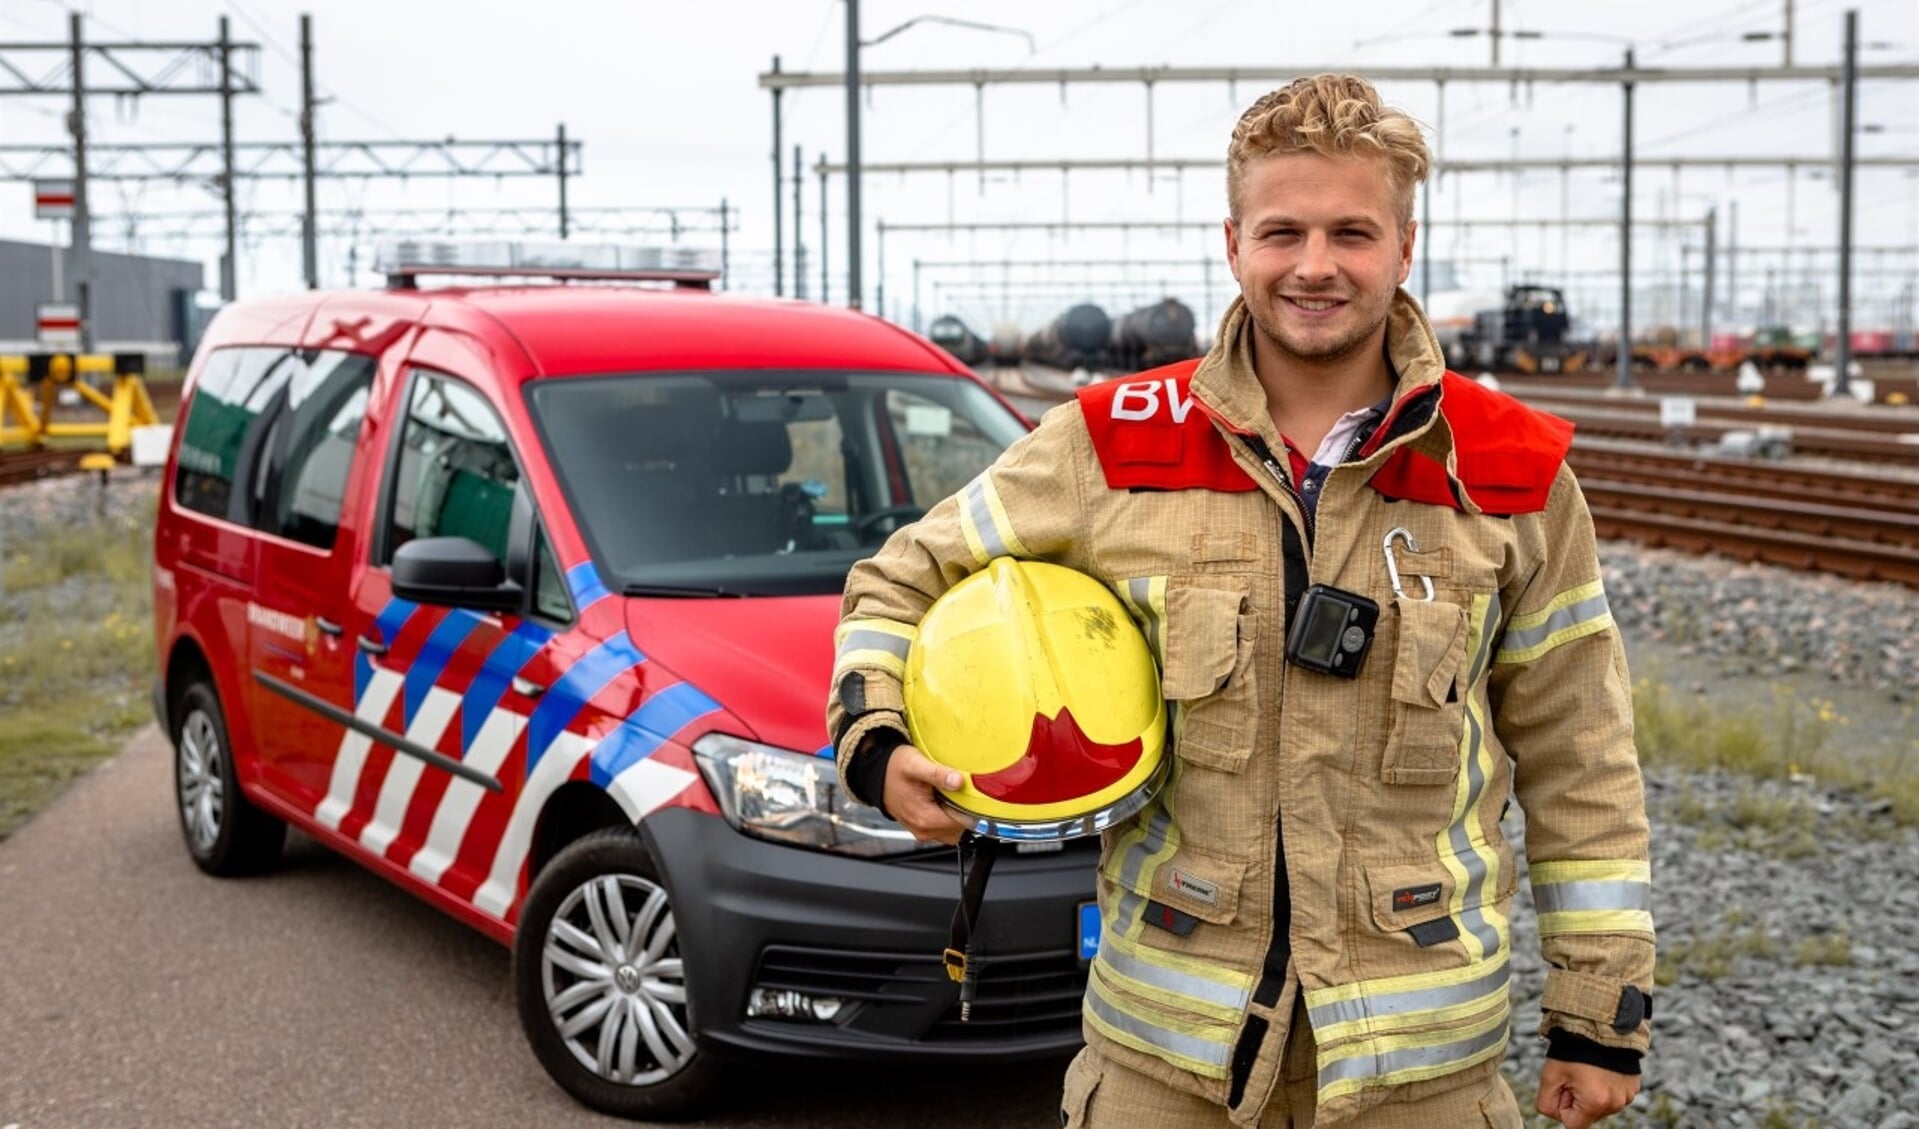 Brandweervrijwilliger Nick uit Oostvoorne